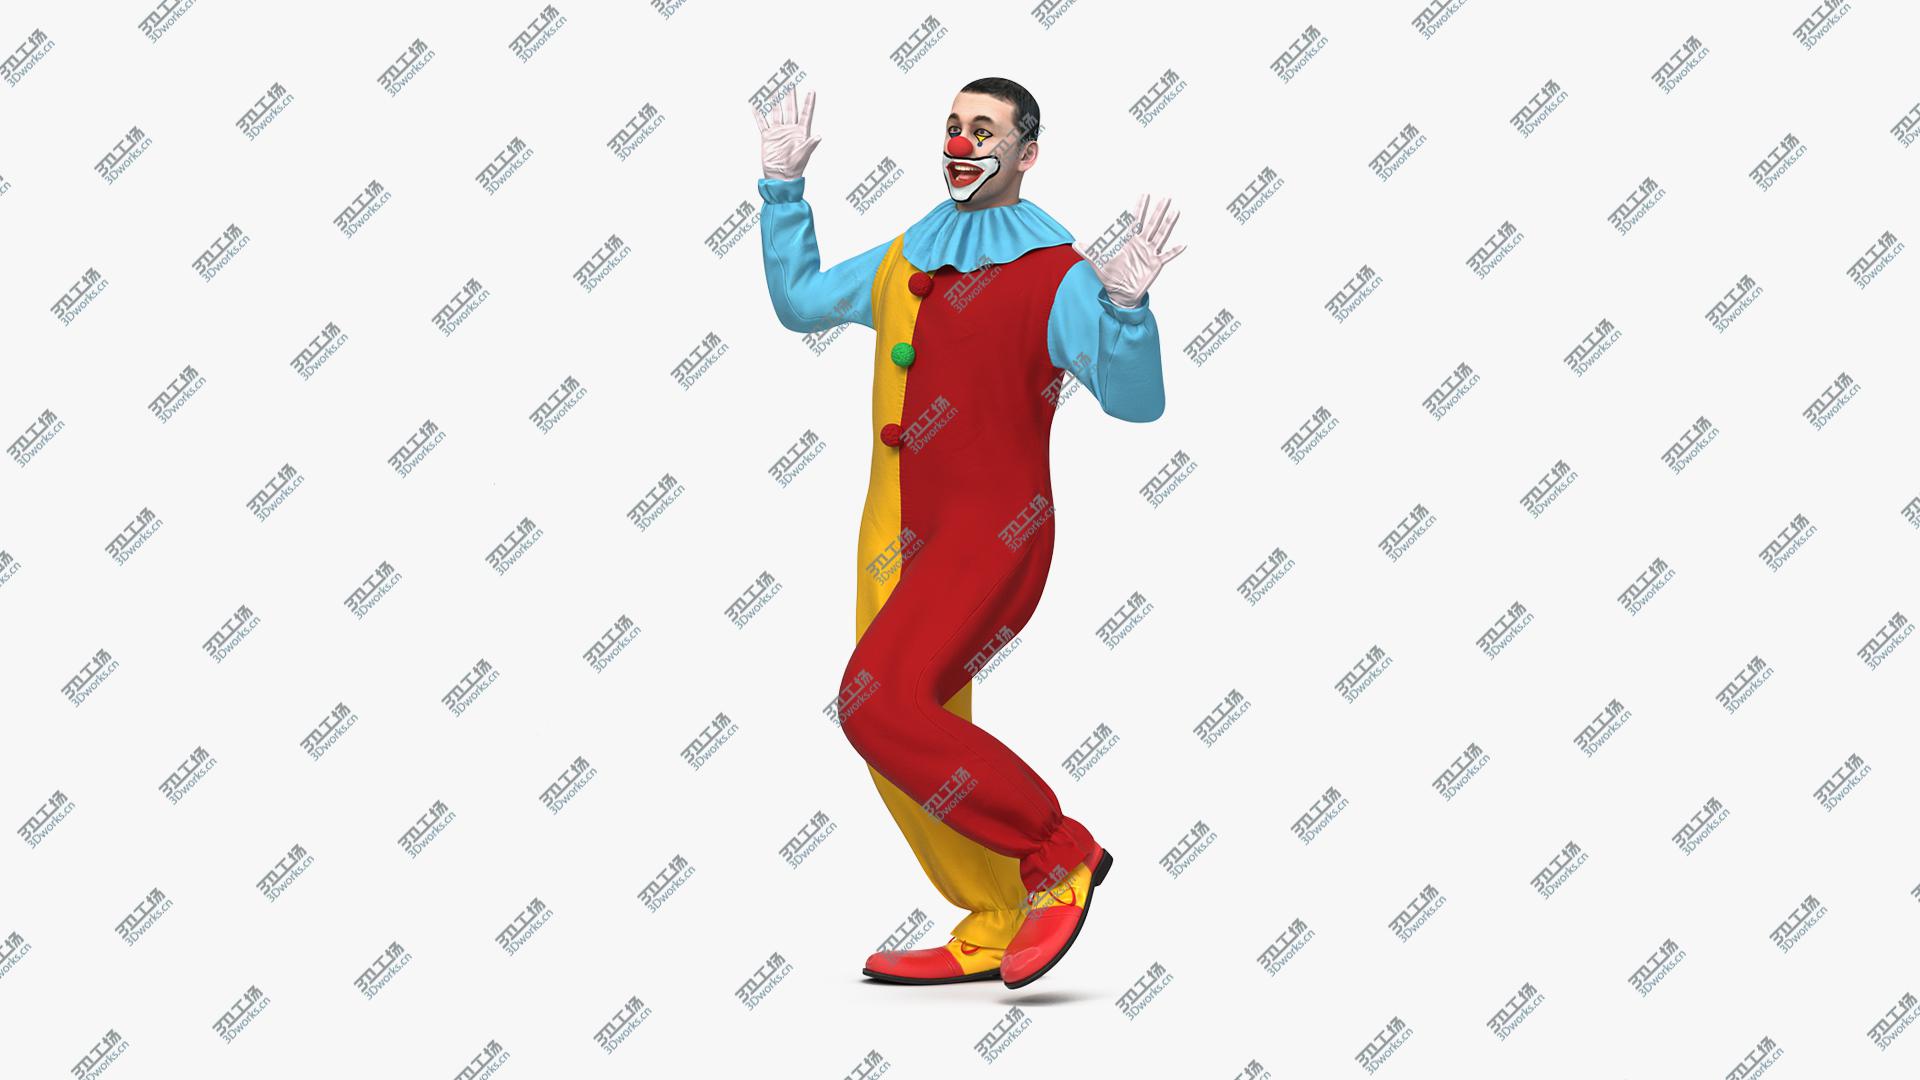 images/goods_img/202104093/3D Circus Clown Dancing Pose/5.jpg